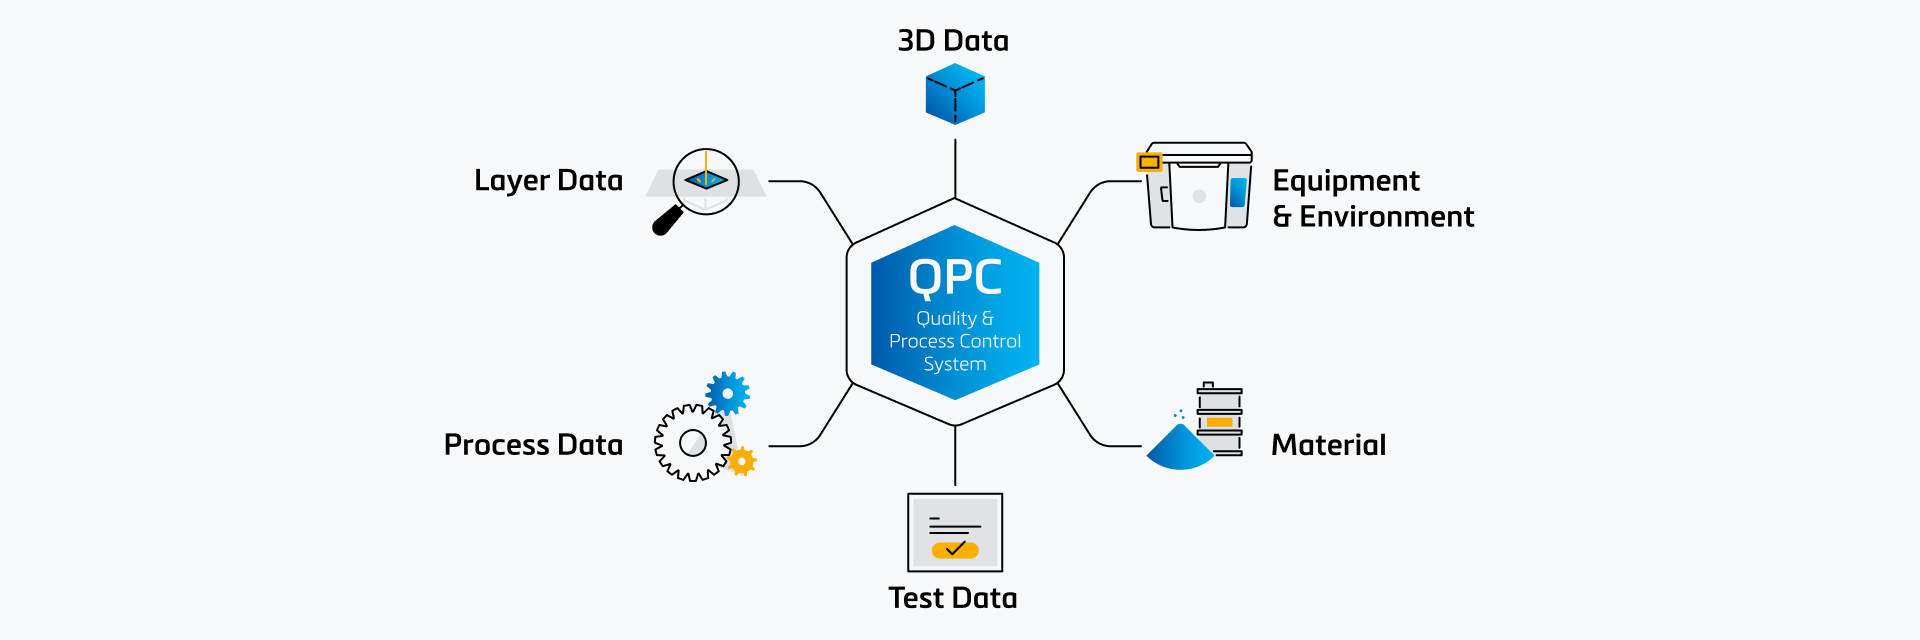 QPCシステムが、レイヤー、3D、プロセス、テストデータなどのさまざまなデータソースに接続し、材料や設備、環境情報とともに表示されているイメージ。